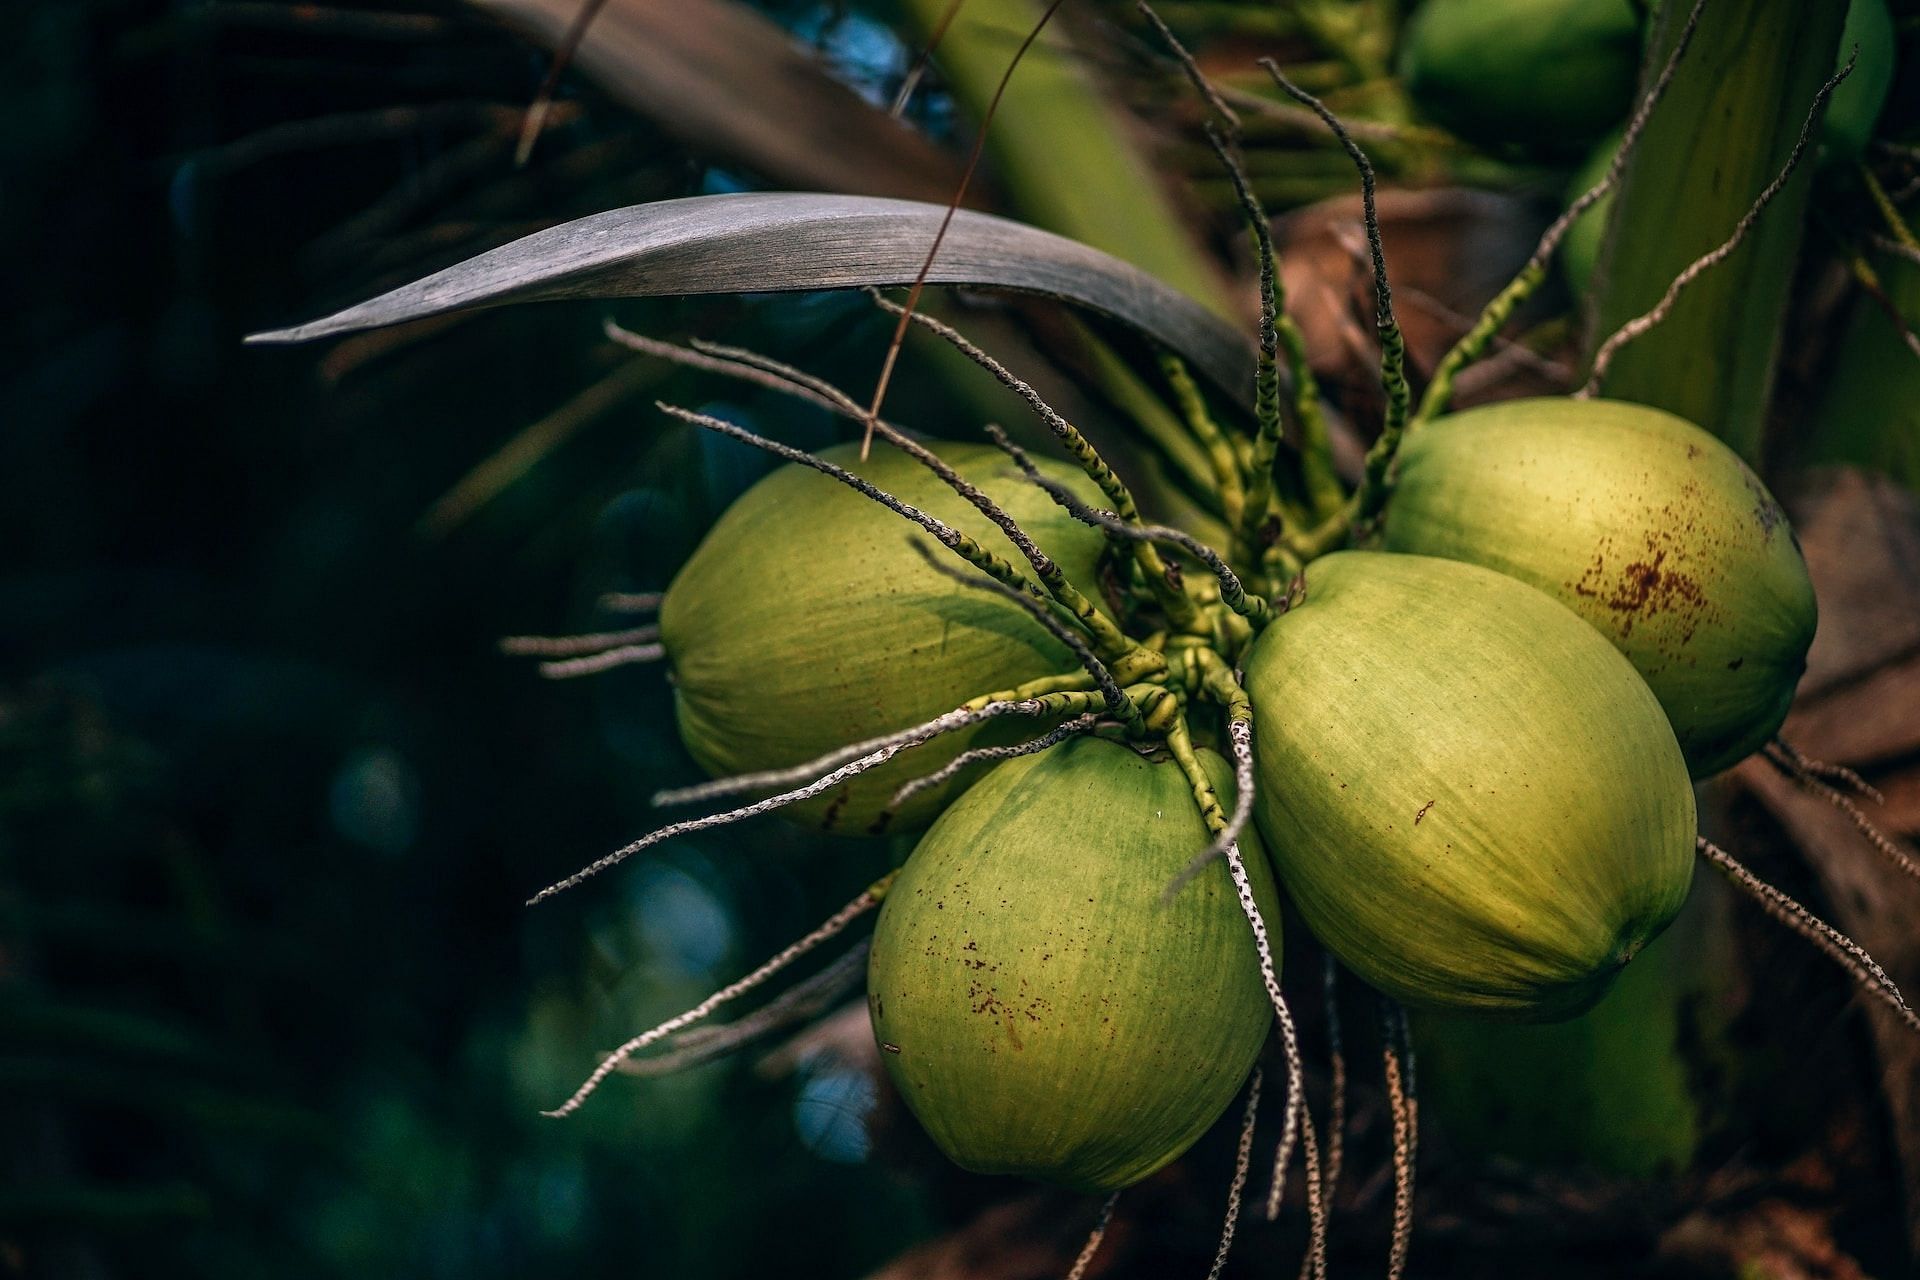 Coconut (Photo via Datingscout/Unsplash)